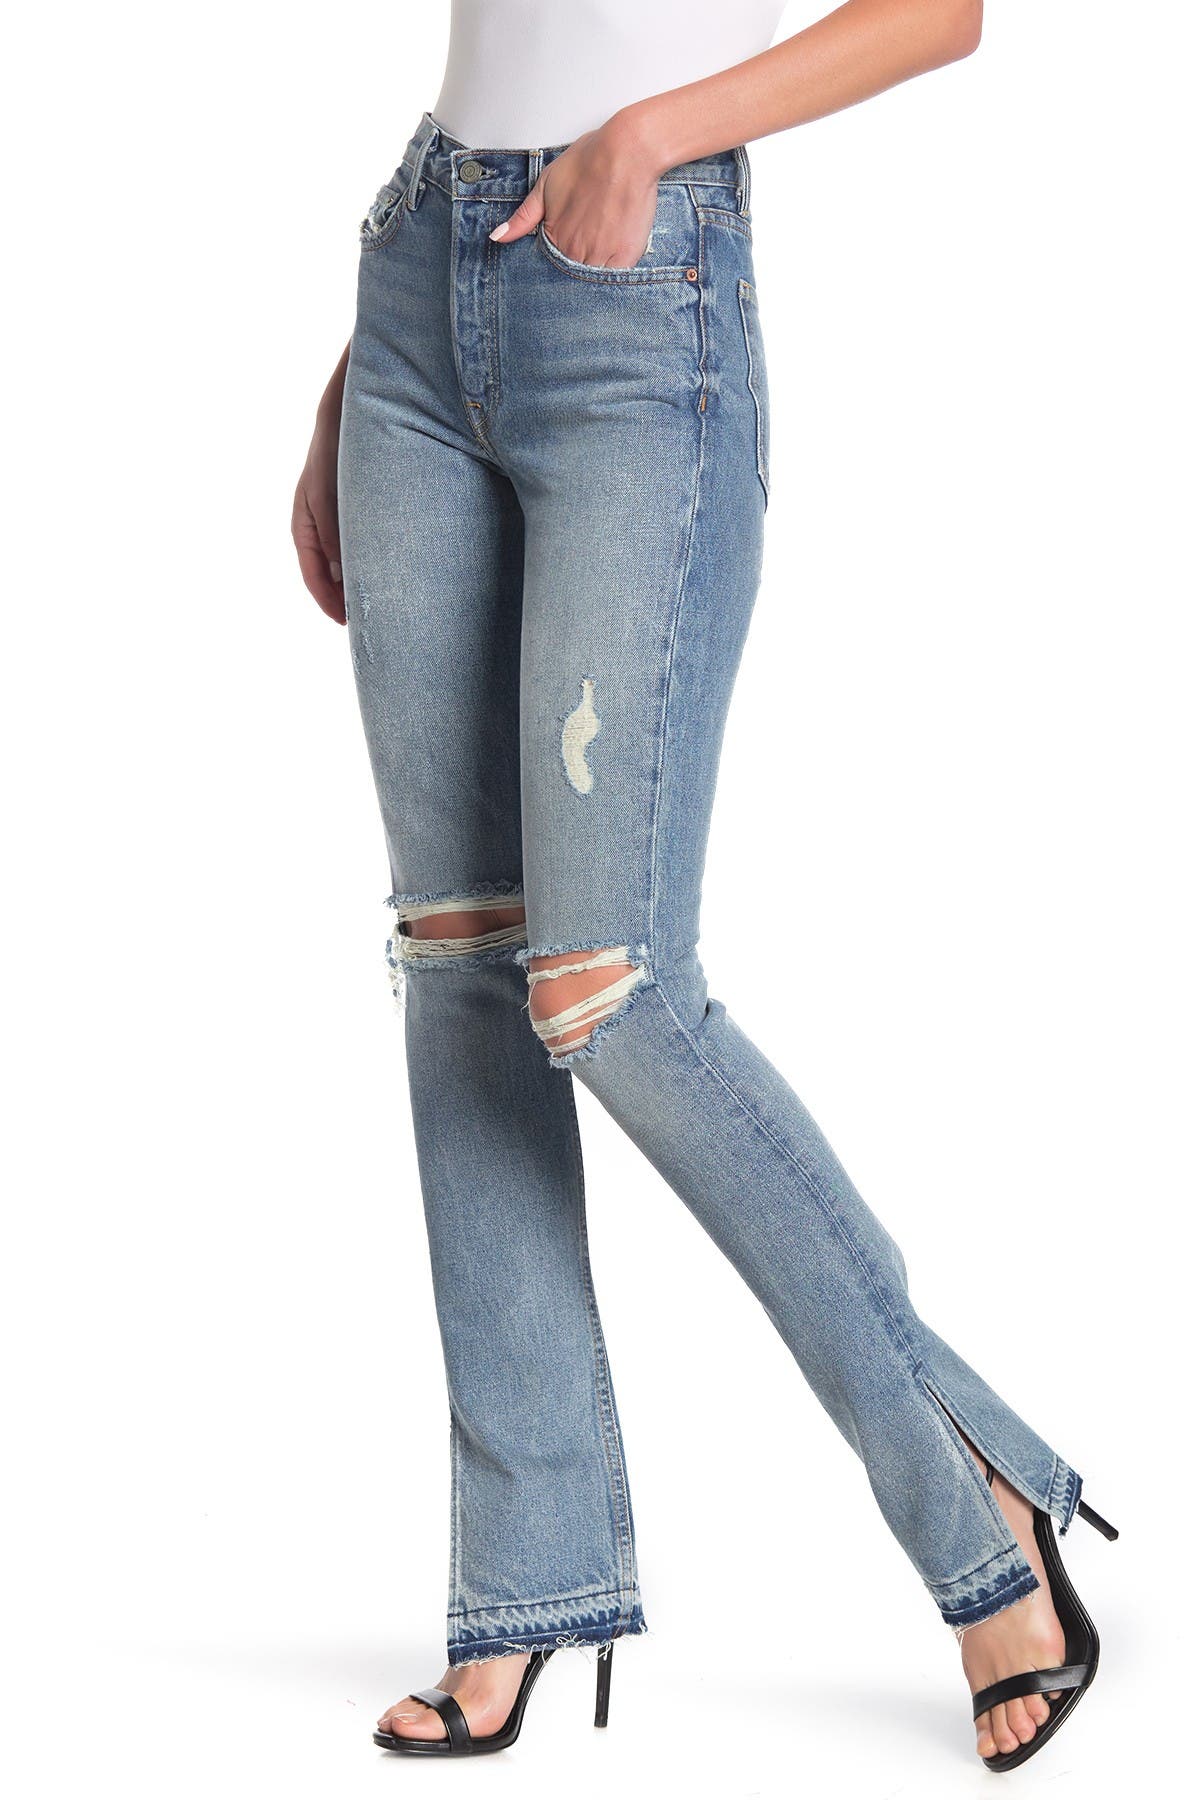 grlfrnd natalia jeans